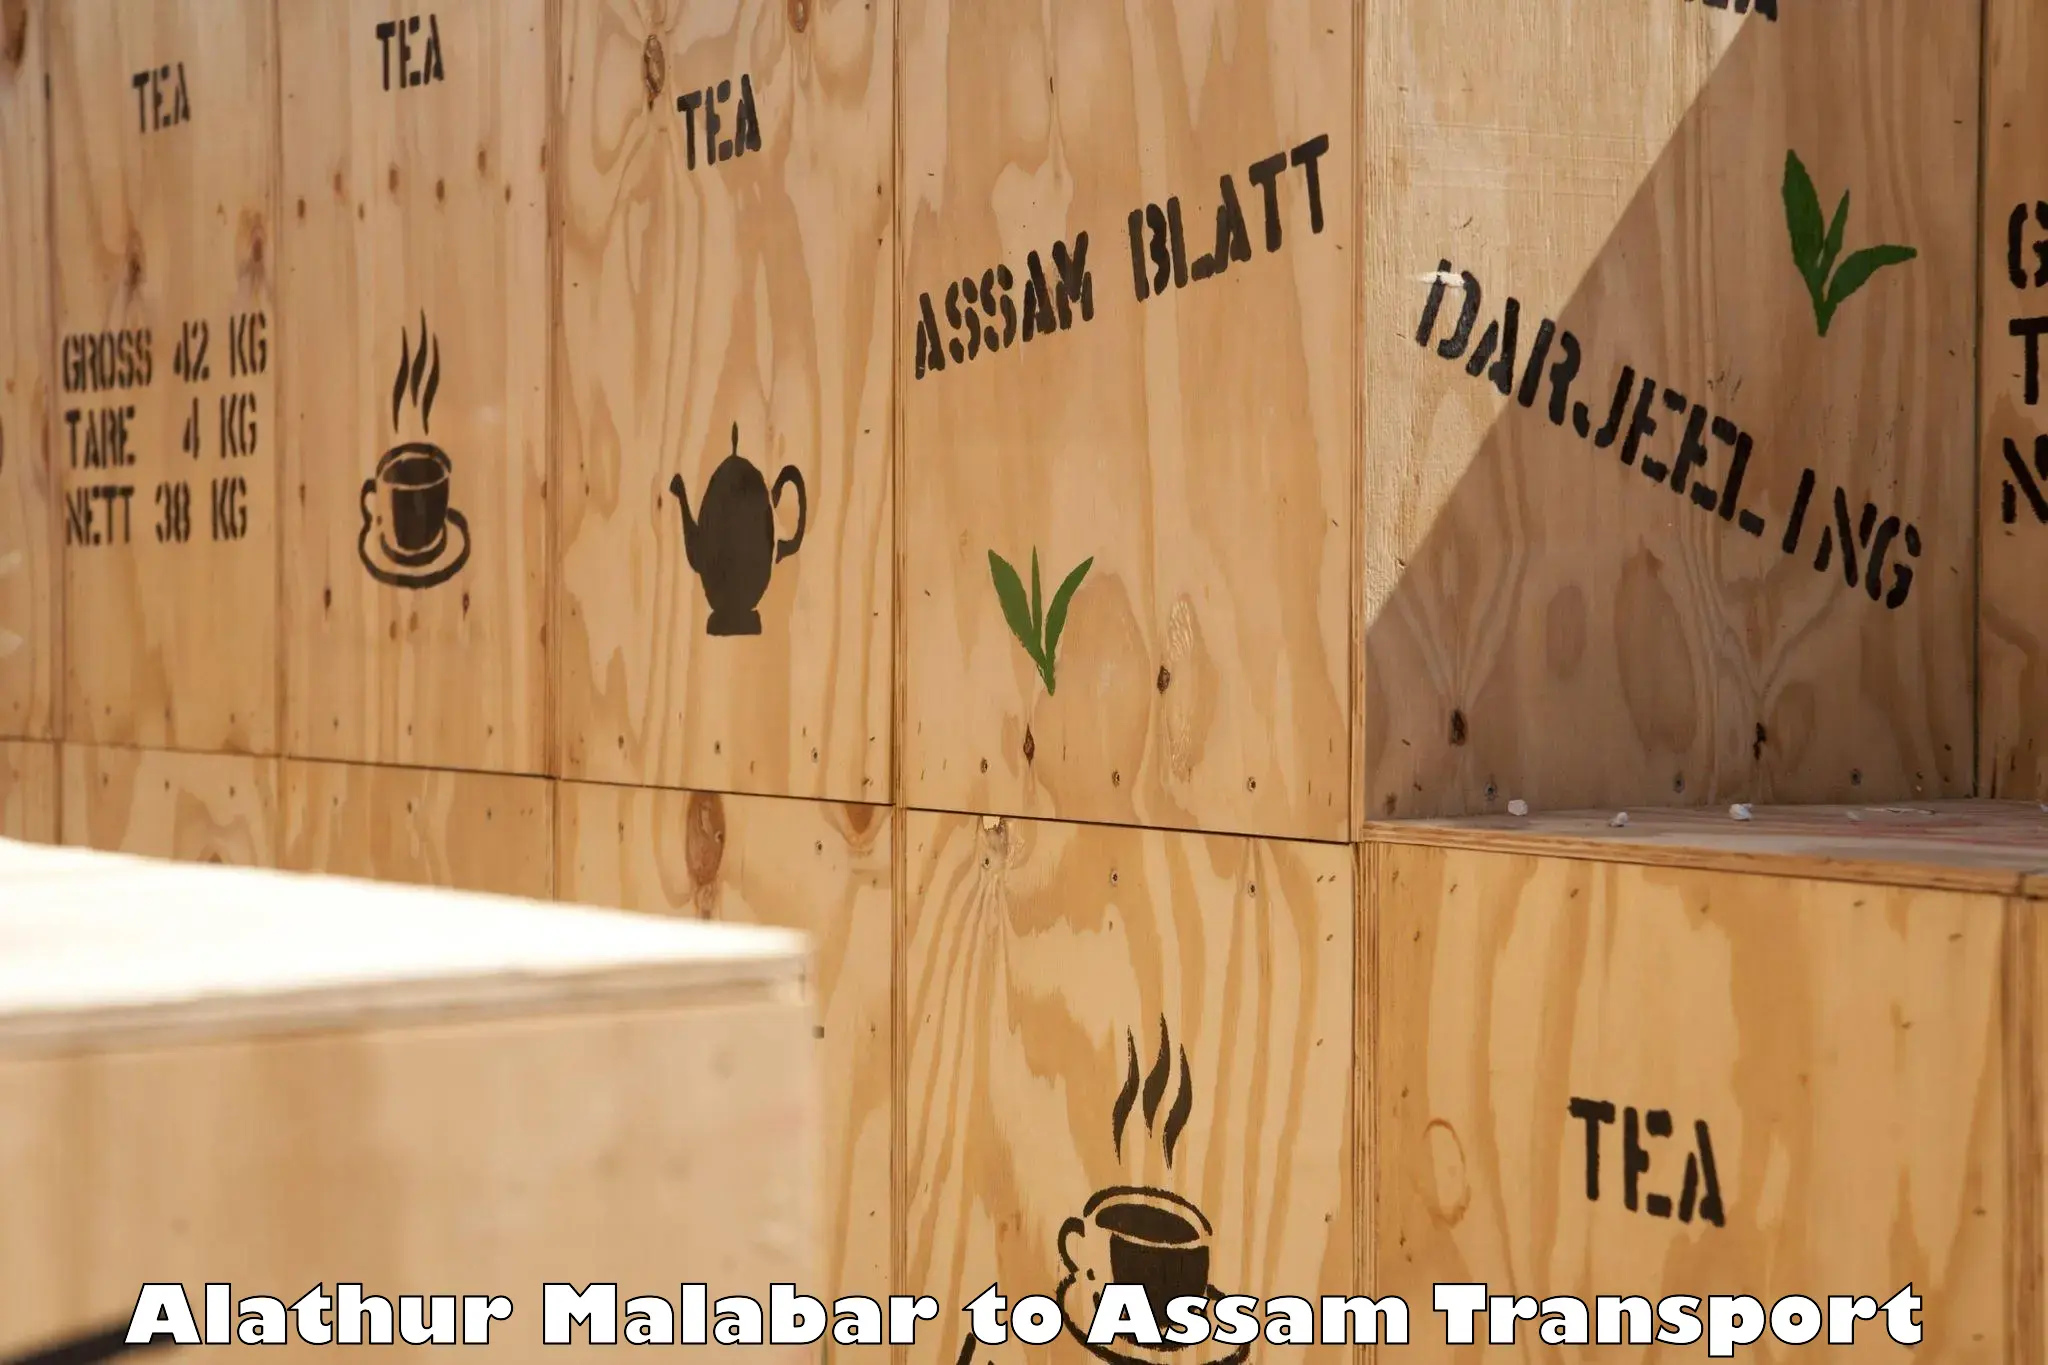 India truck logistics services Alathur Malabar to Assam